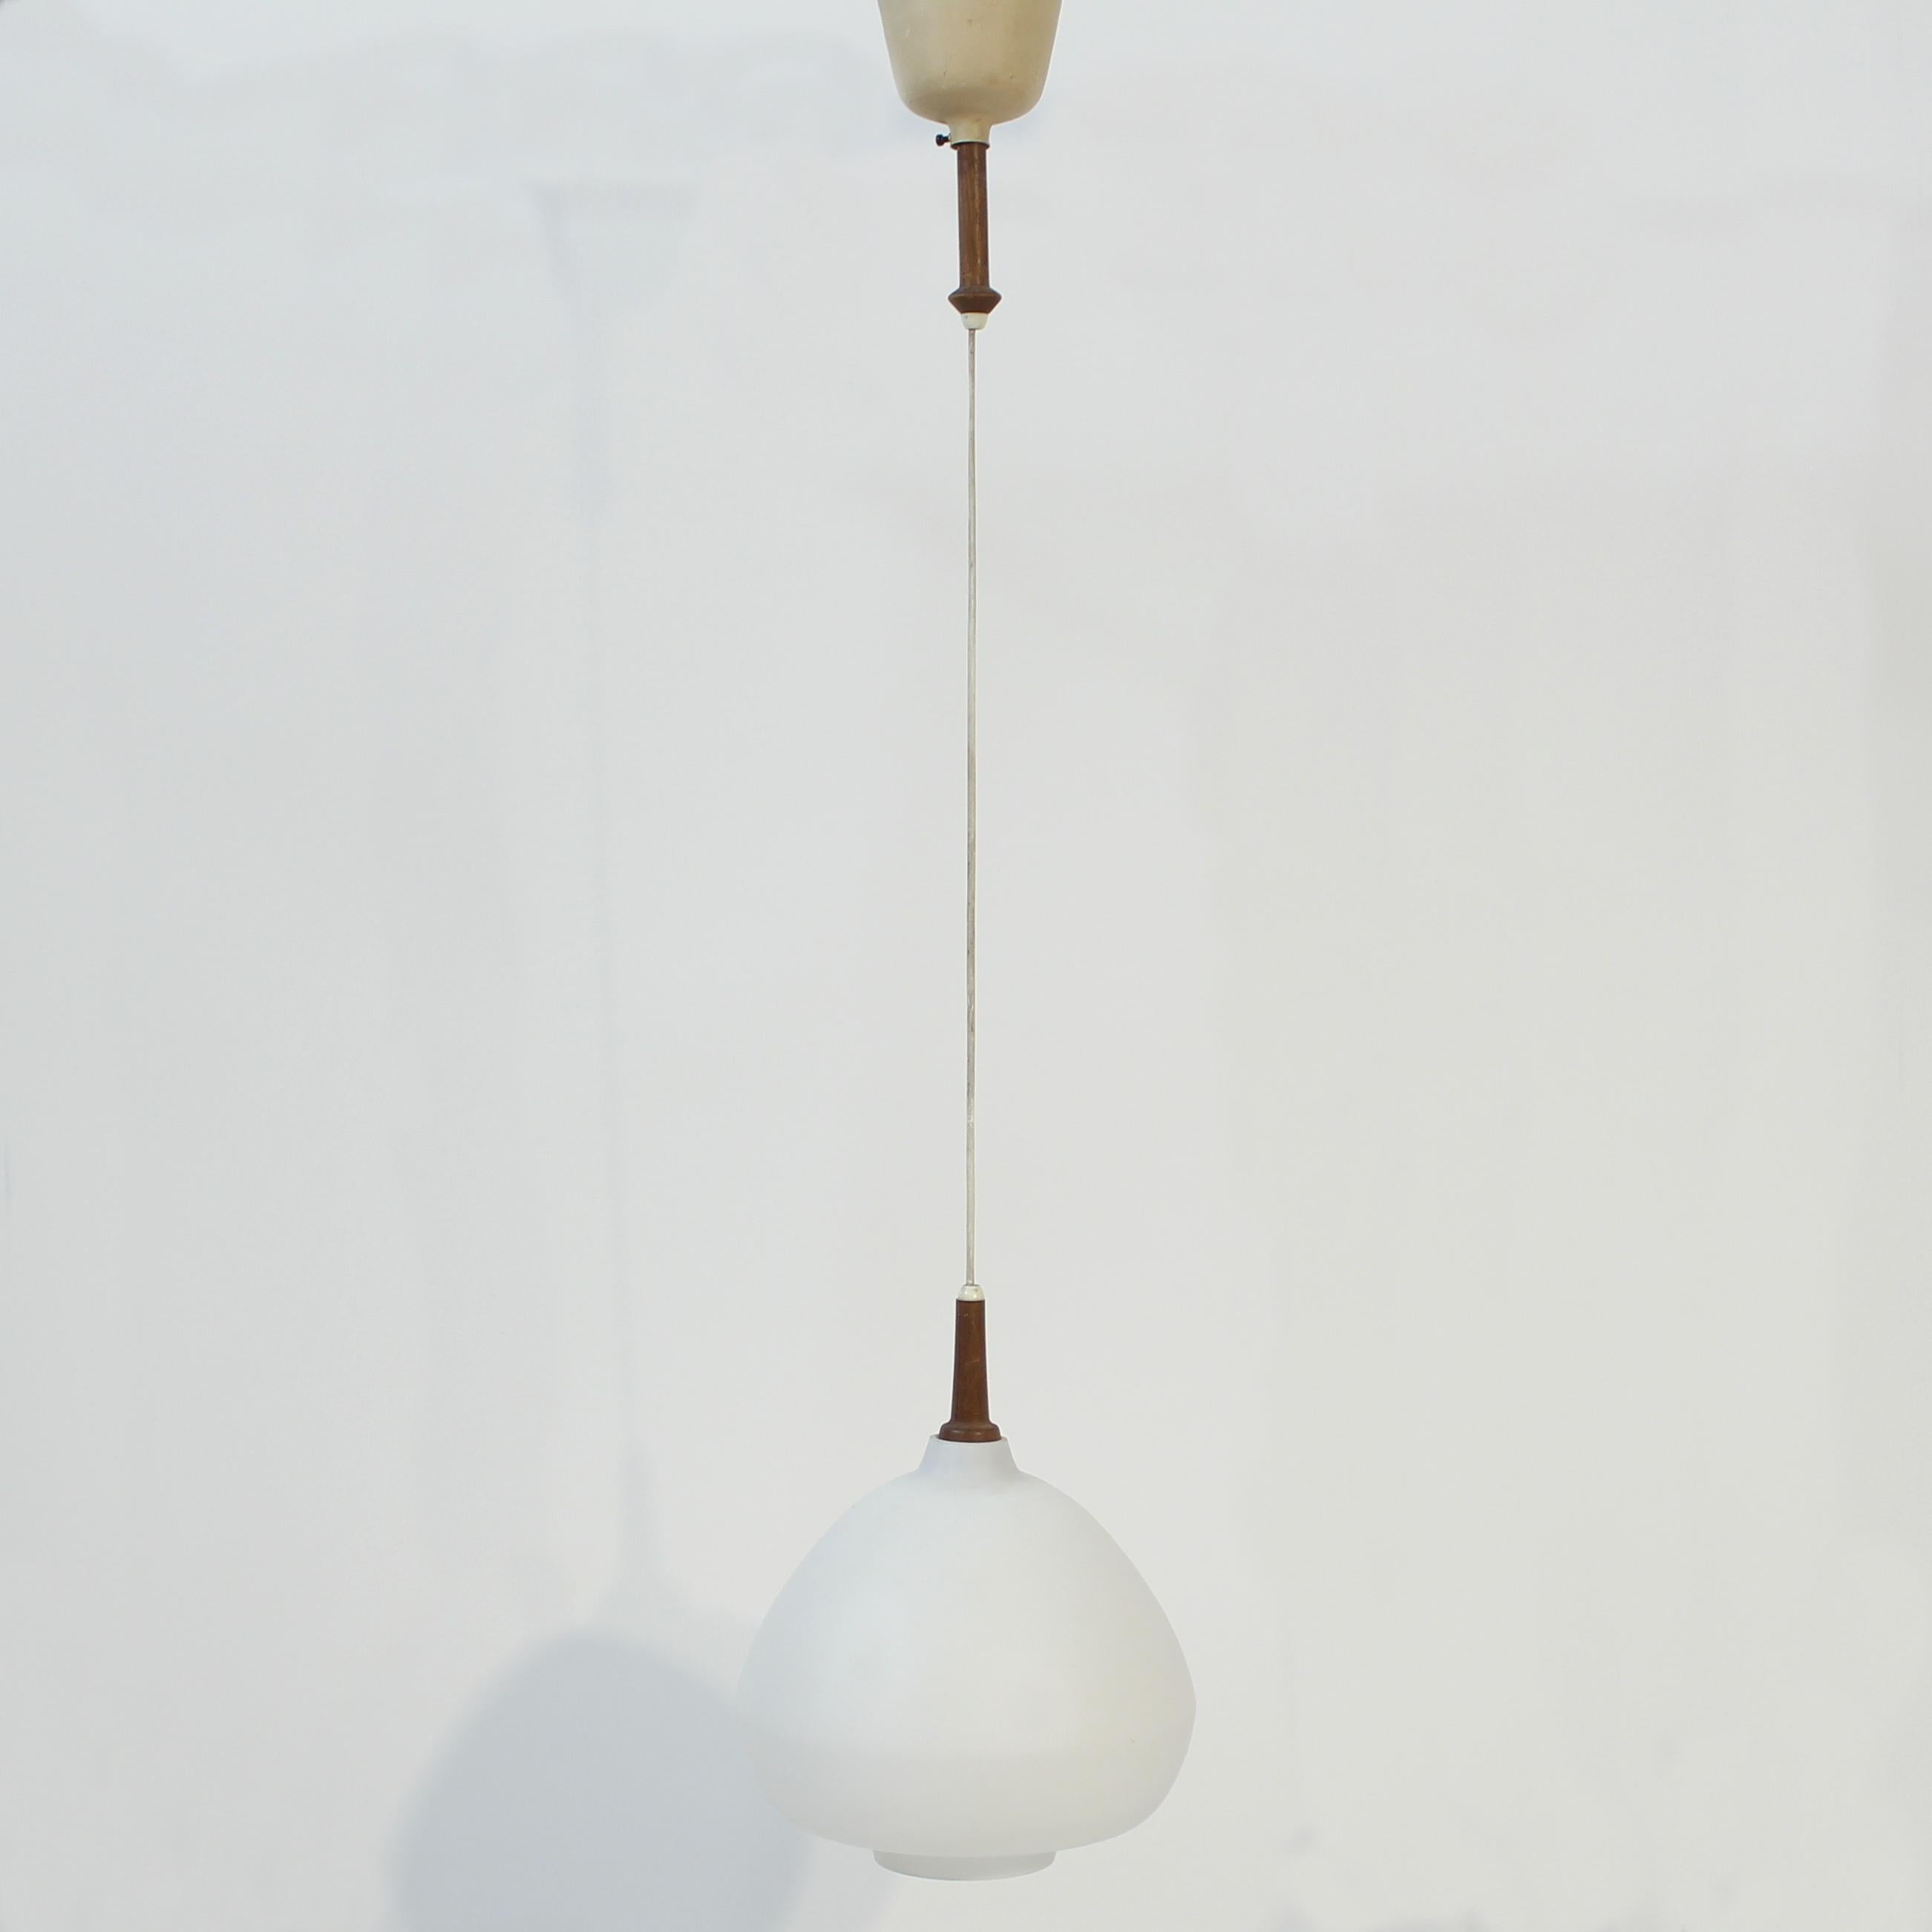 Deckenleuchte aus Teakholz und Opalglas, entworfen von Hans-Agne Jakobsson für seine eigene Firma zu Beginn seiner Karriere in den 1950er Jahren. Sie besteht aus einem kuppelförmigen Opalglasschirm mit einigen Details aus Teakholz und einem